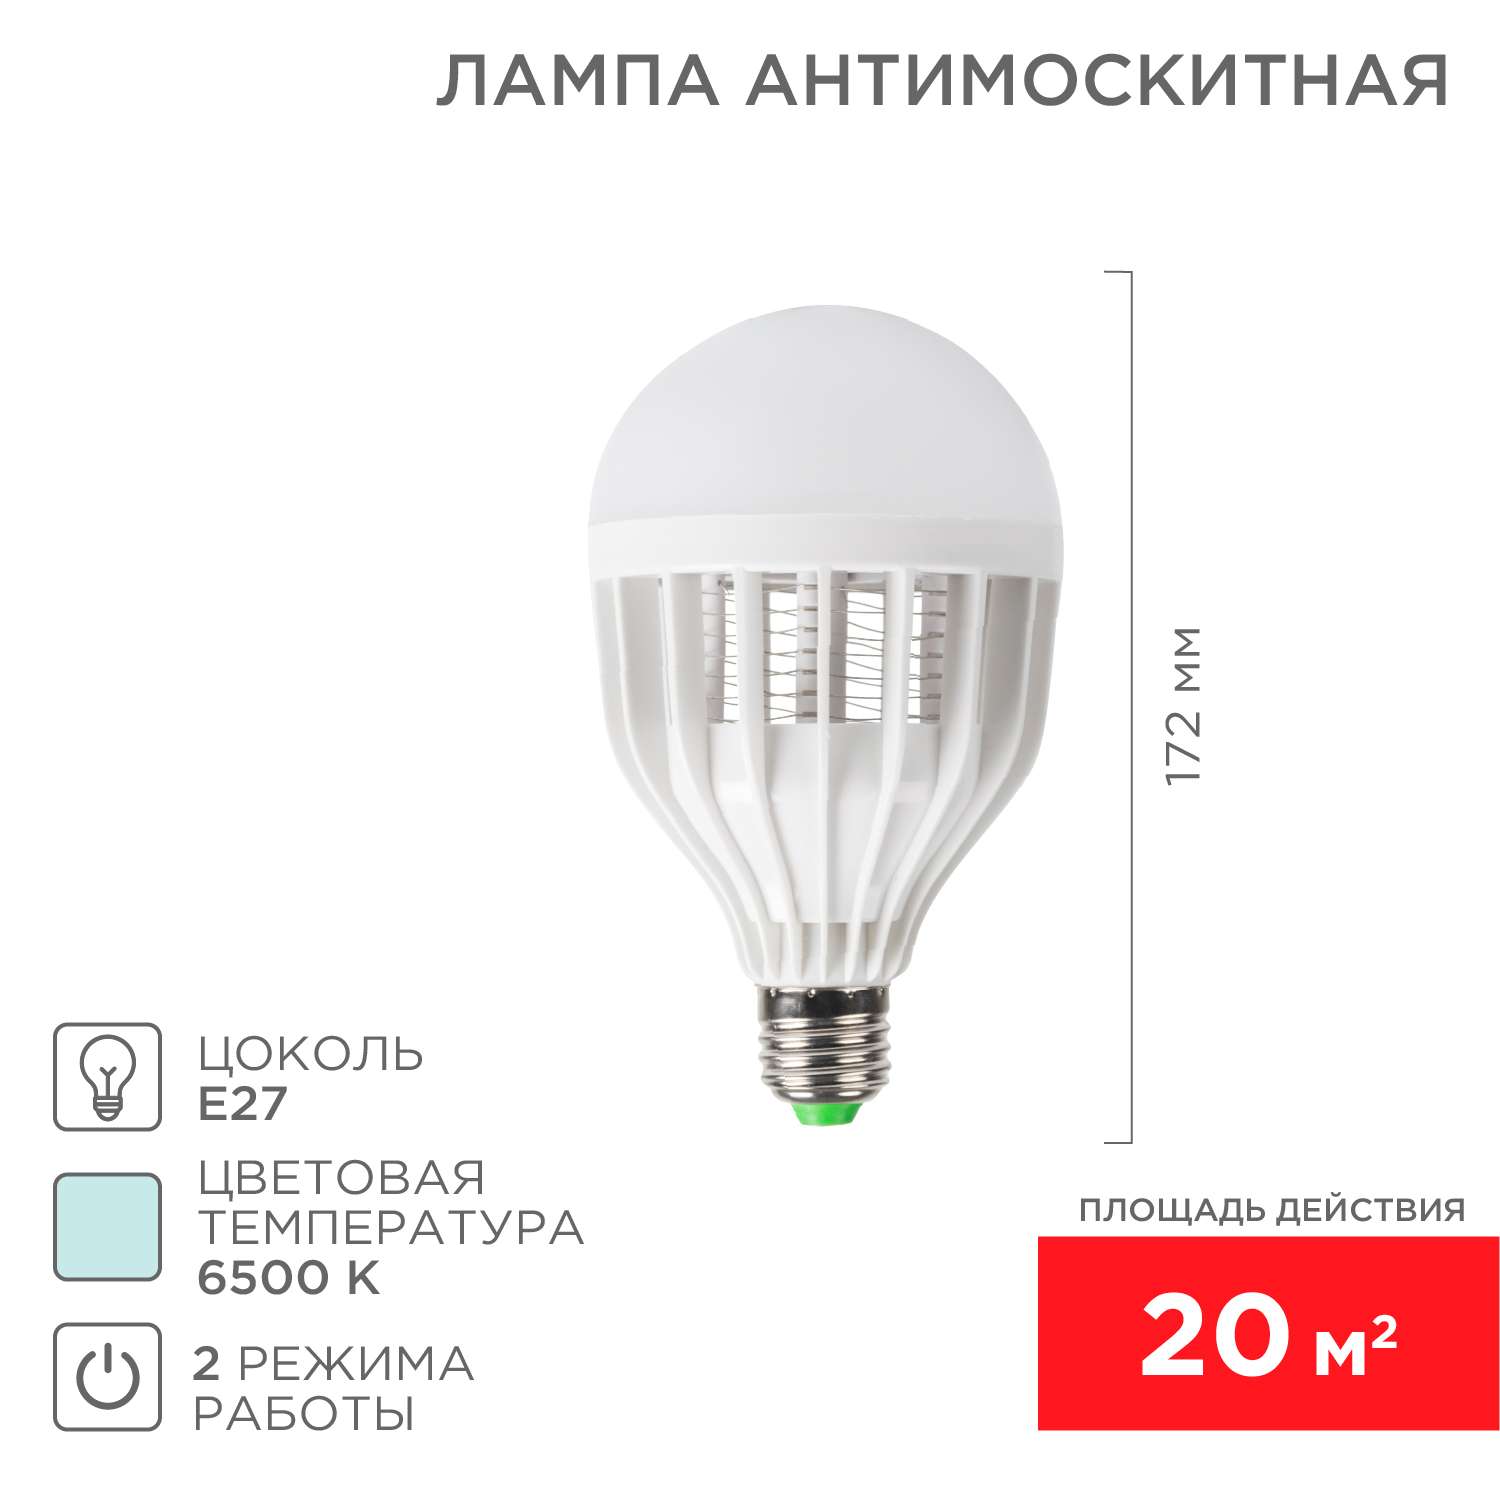 Антимоскитная лампа REXANT 10 Вт Е27 20 кв. м - фото 1